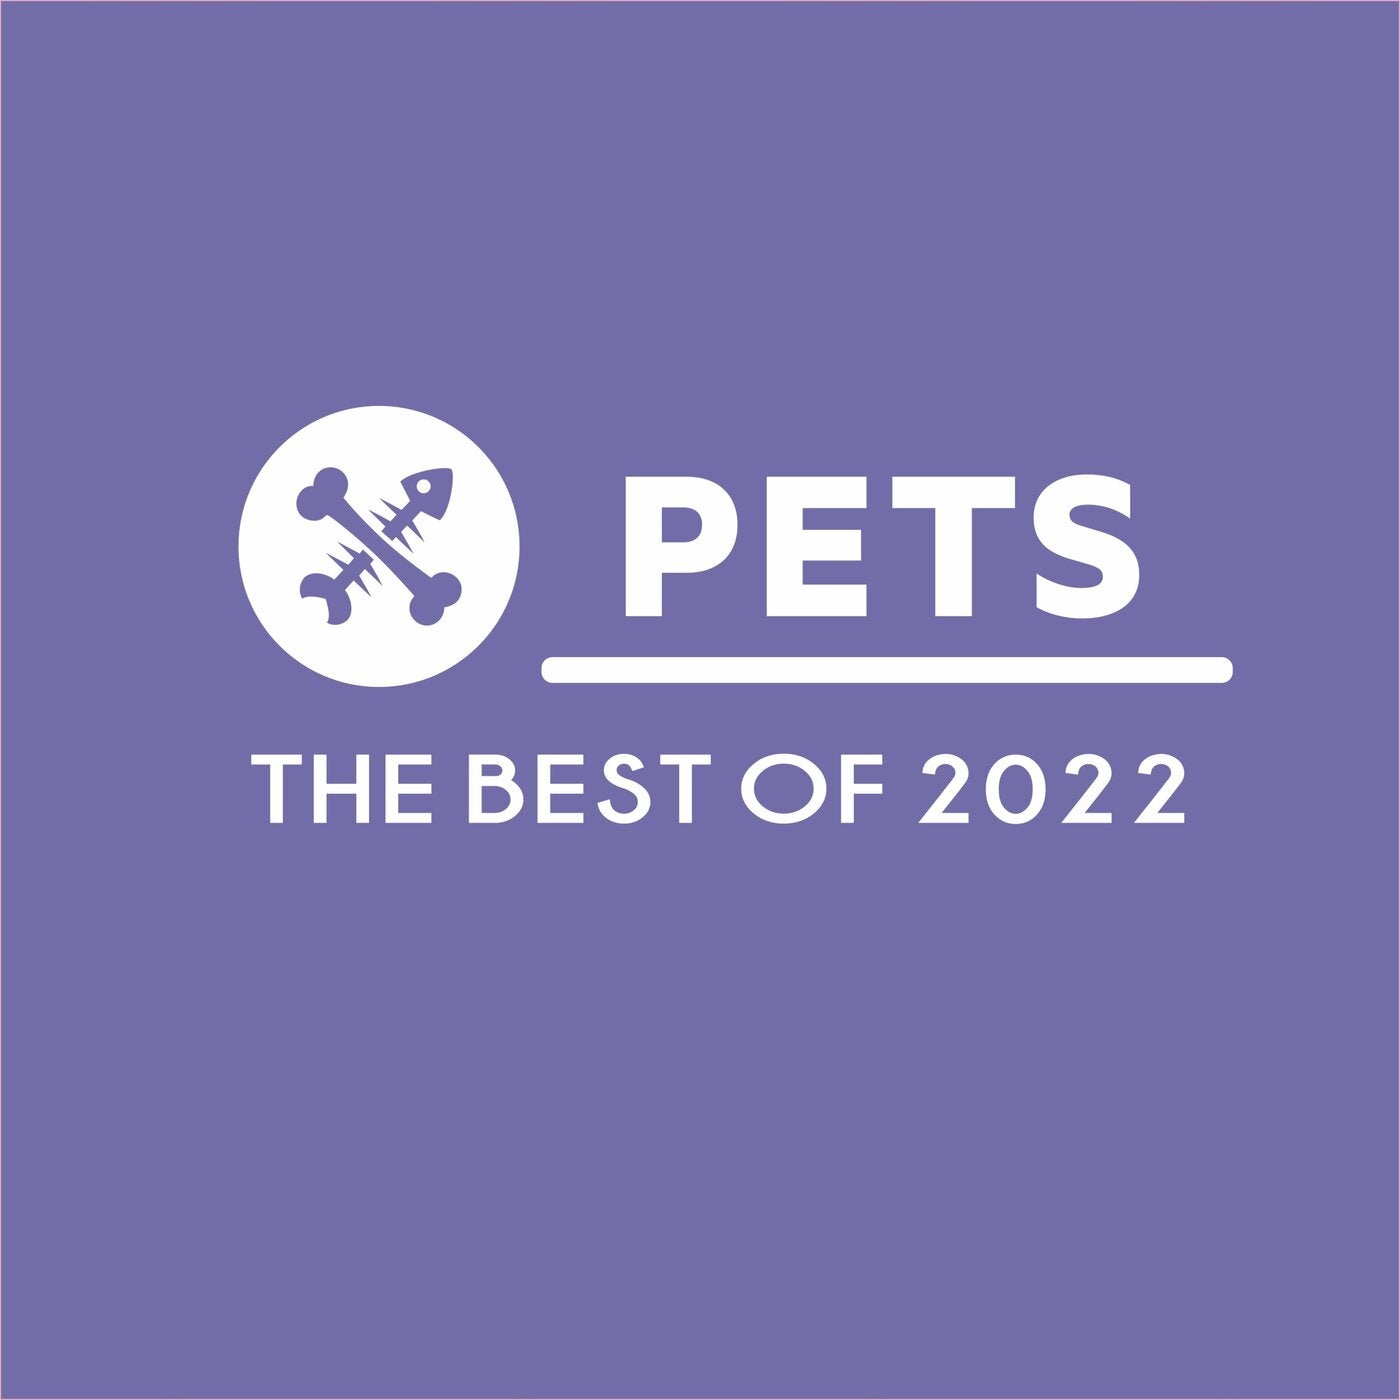 Pet 2022. Together do #Chem better полетка.